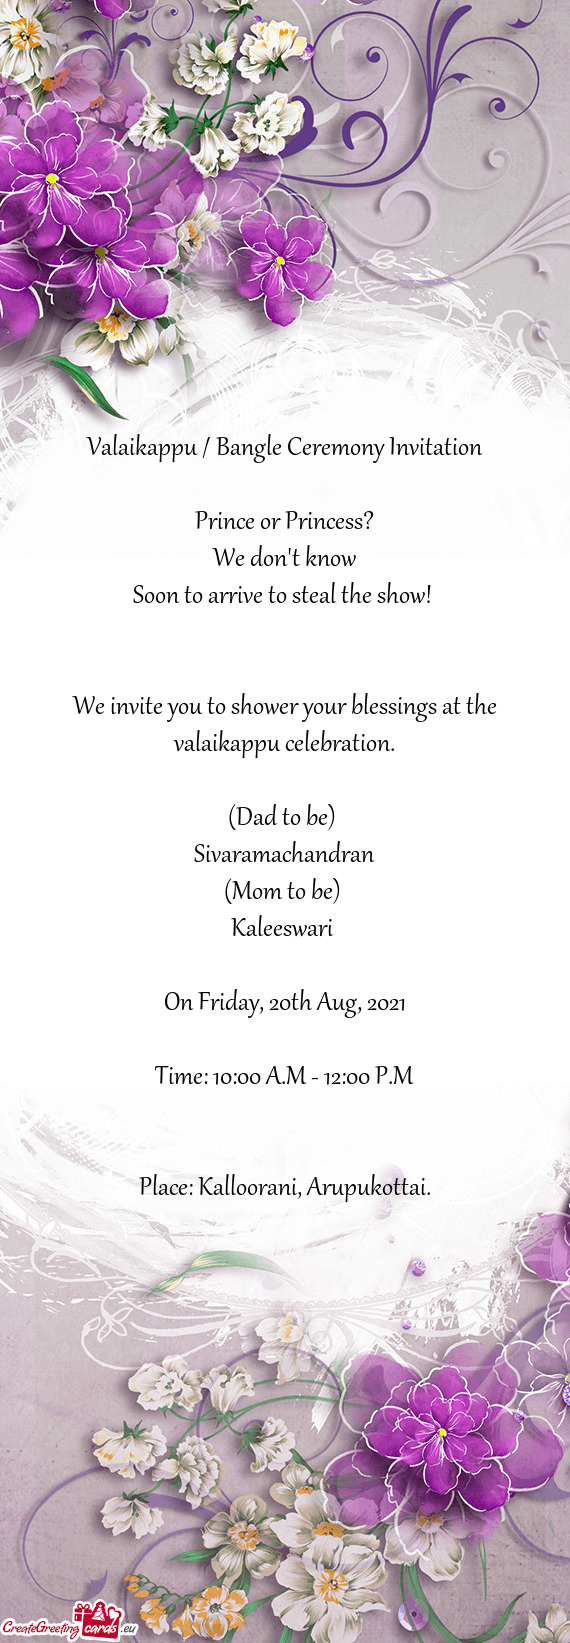 Valaikappu / Bangle Ceremony Invitation